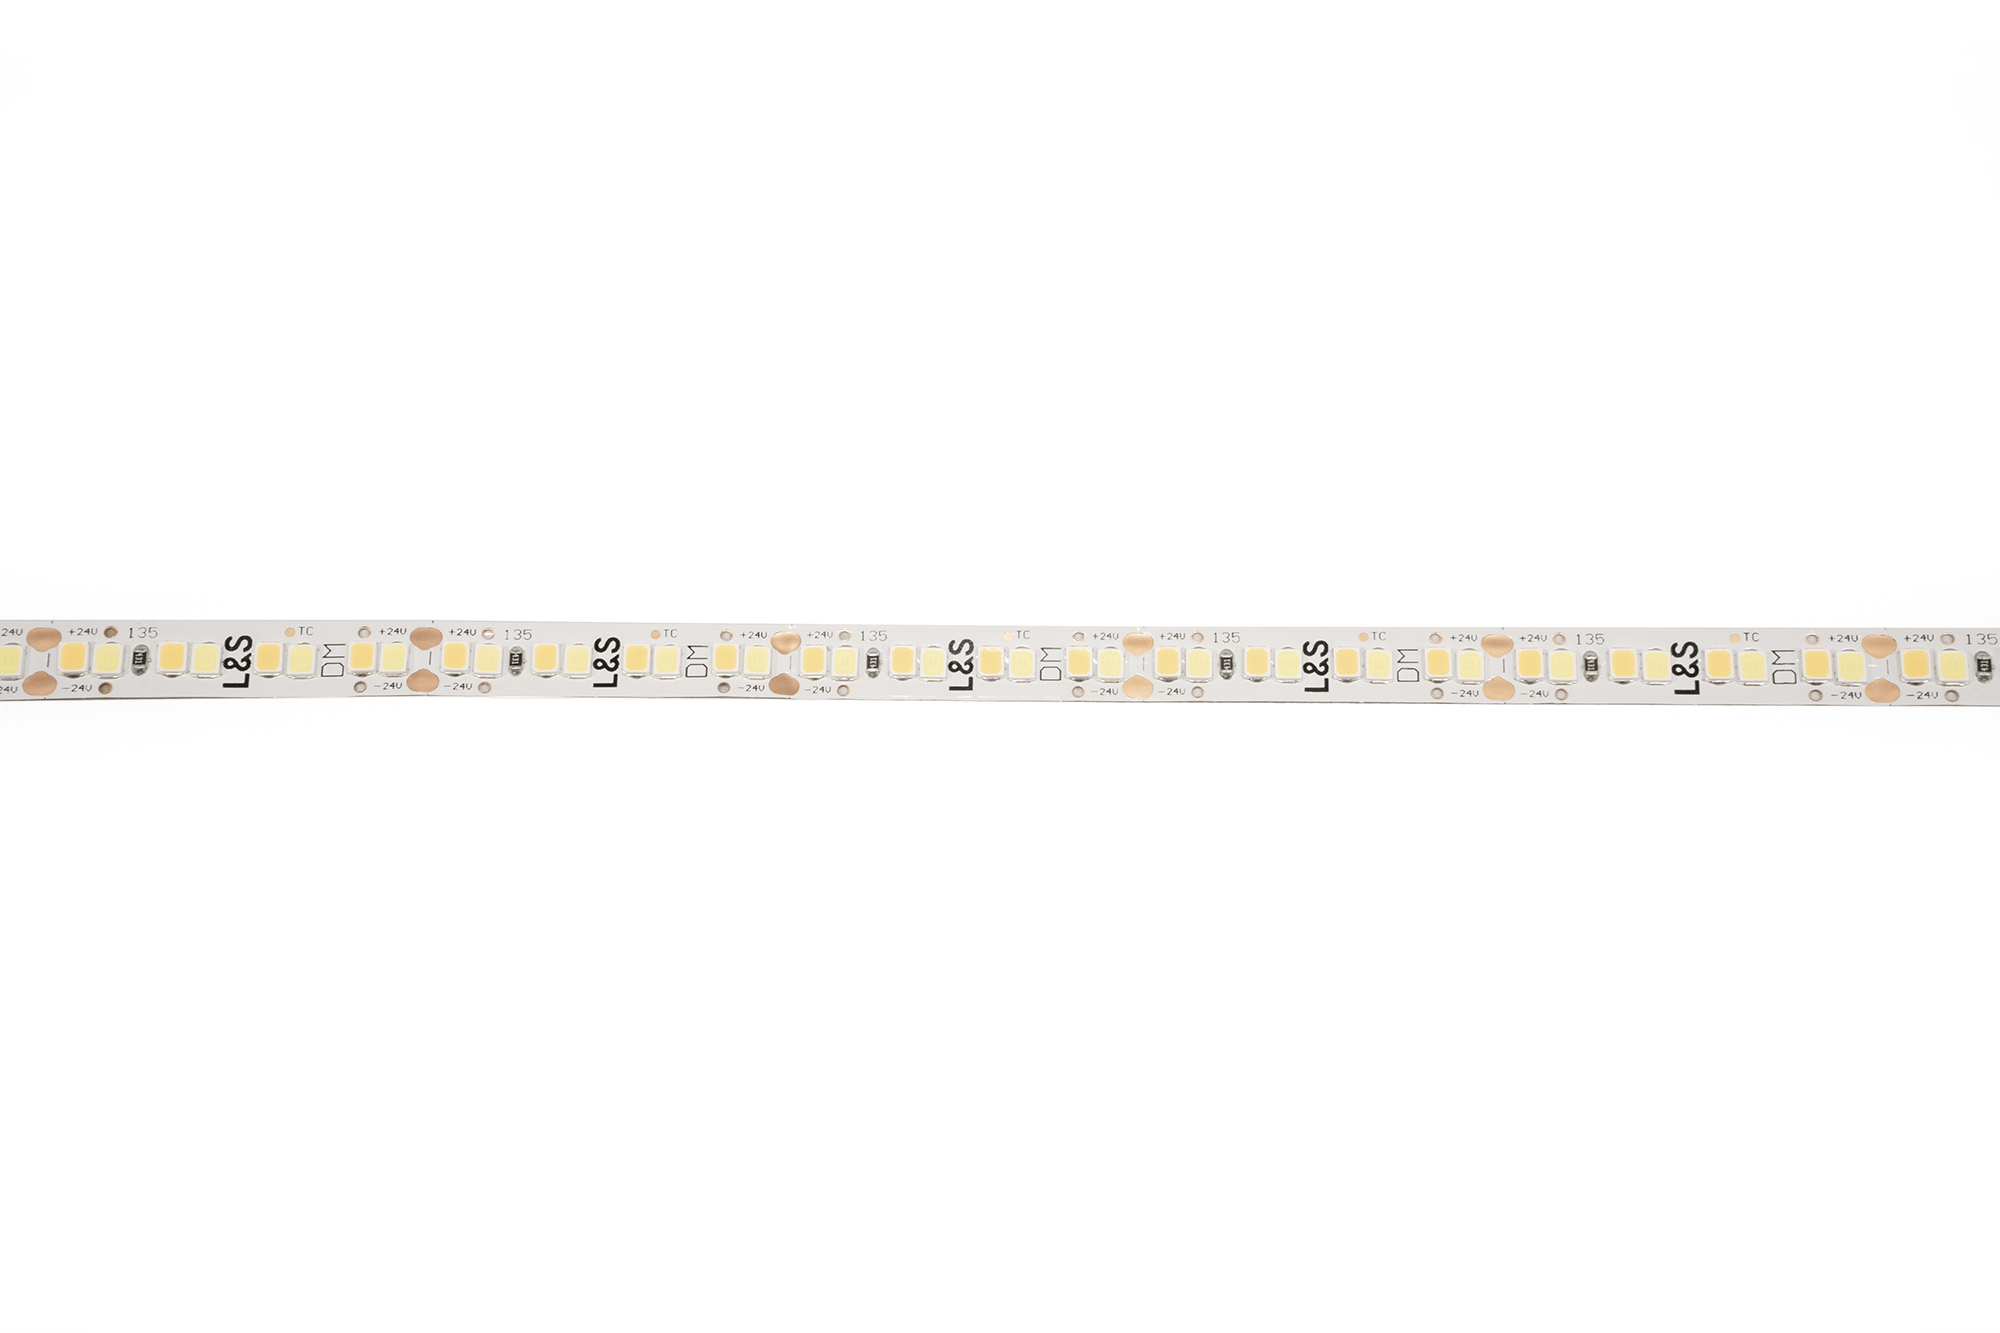 L&S LED-Band HE 112+112LEDs/m (2835), 2700-4000K, 4+4LEDs/35,7mm, 24DC, 9,8W/m, 8mmx321mm, mit 1x. Anschlussltg. 200mm, white PCB, IP20,